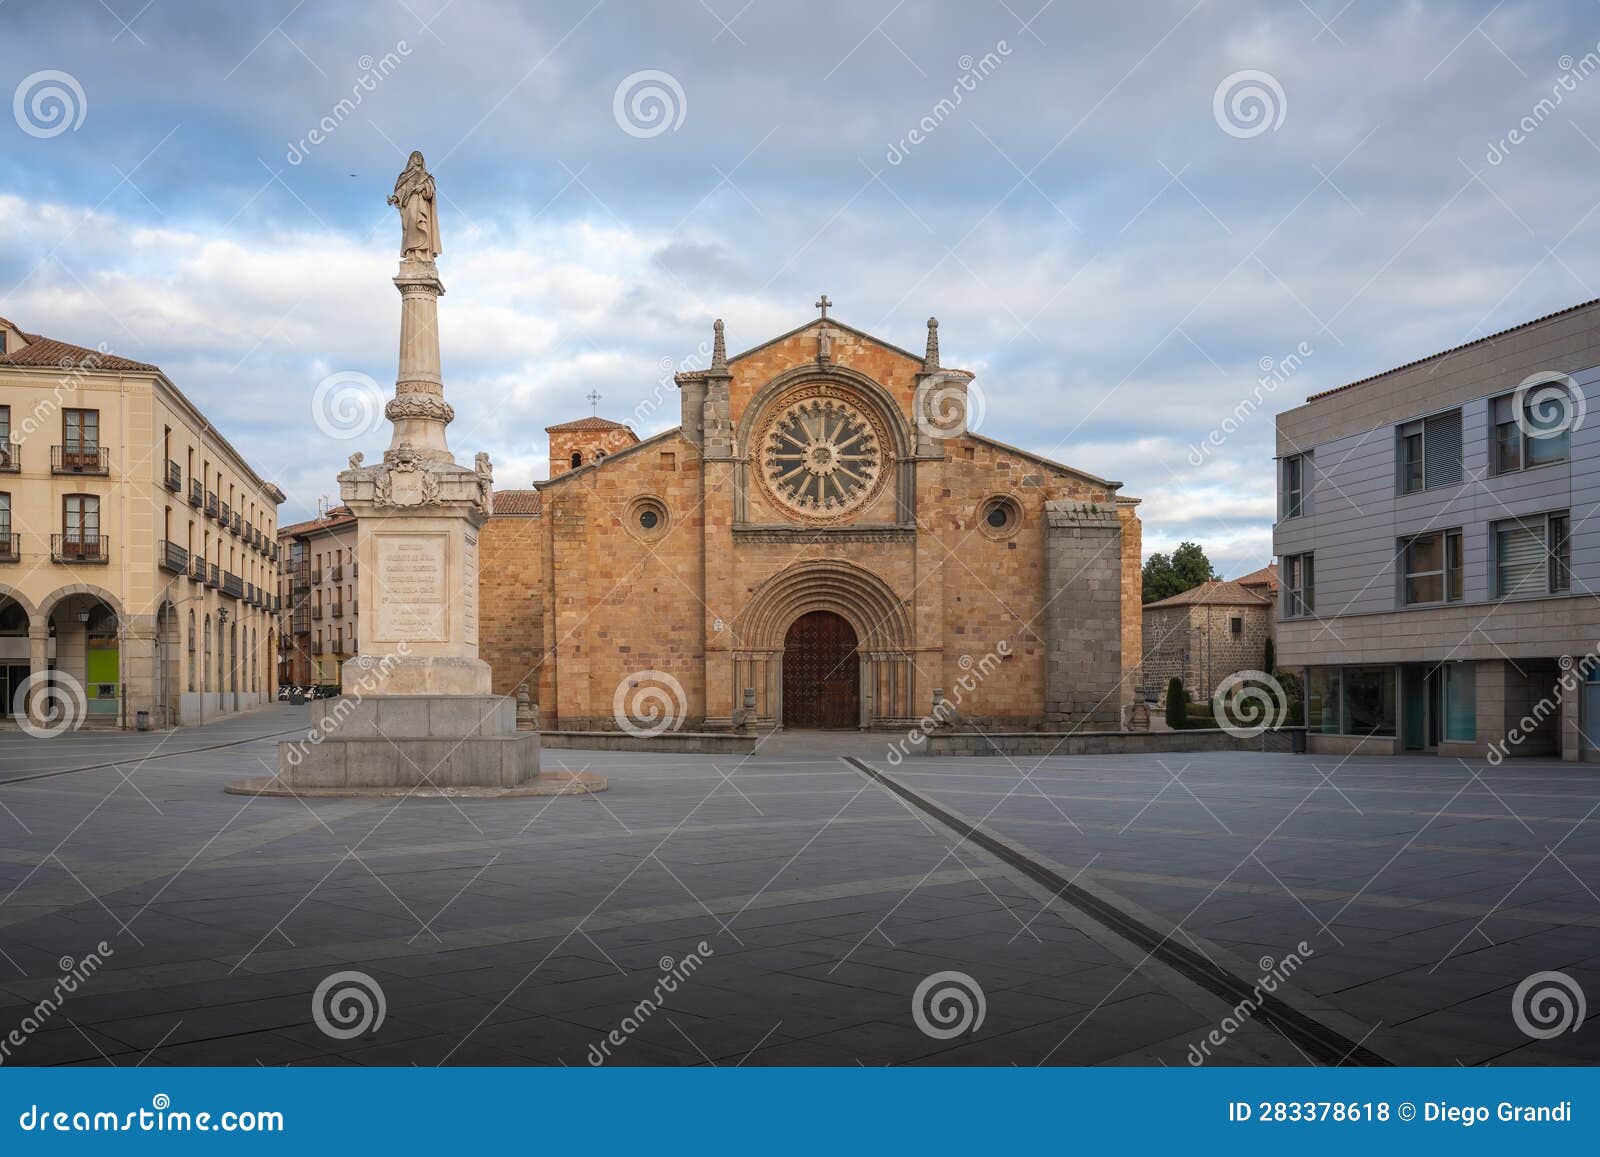 san pedro church at plaza del mercado grande square with palomilla monument - avila, spain